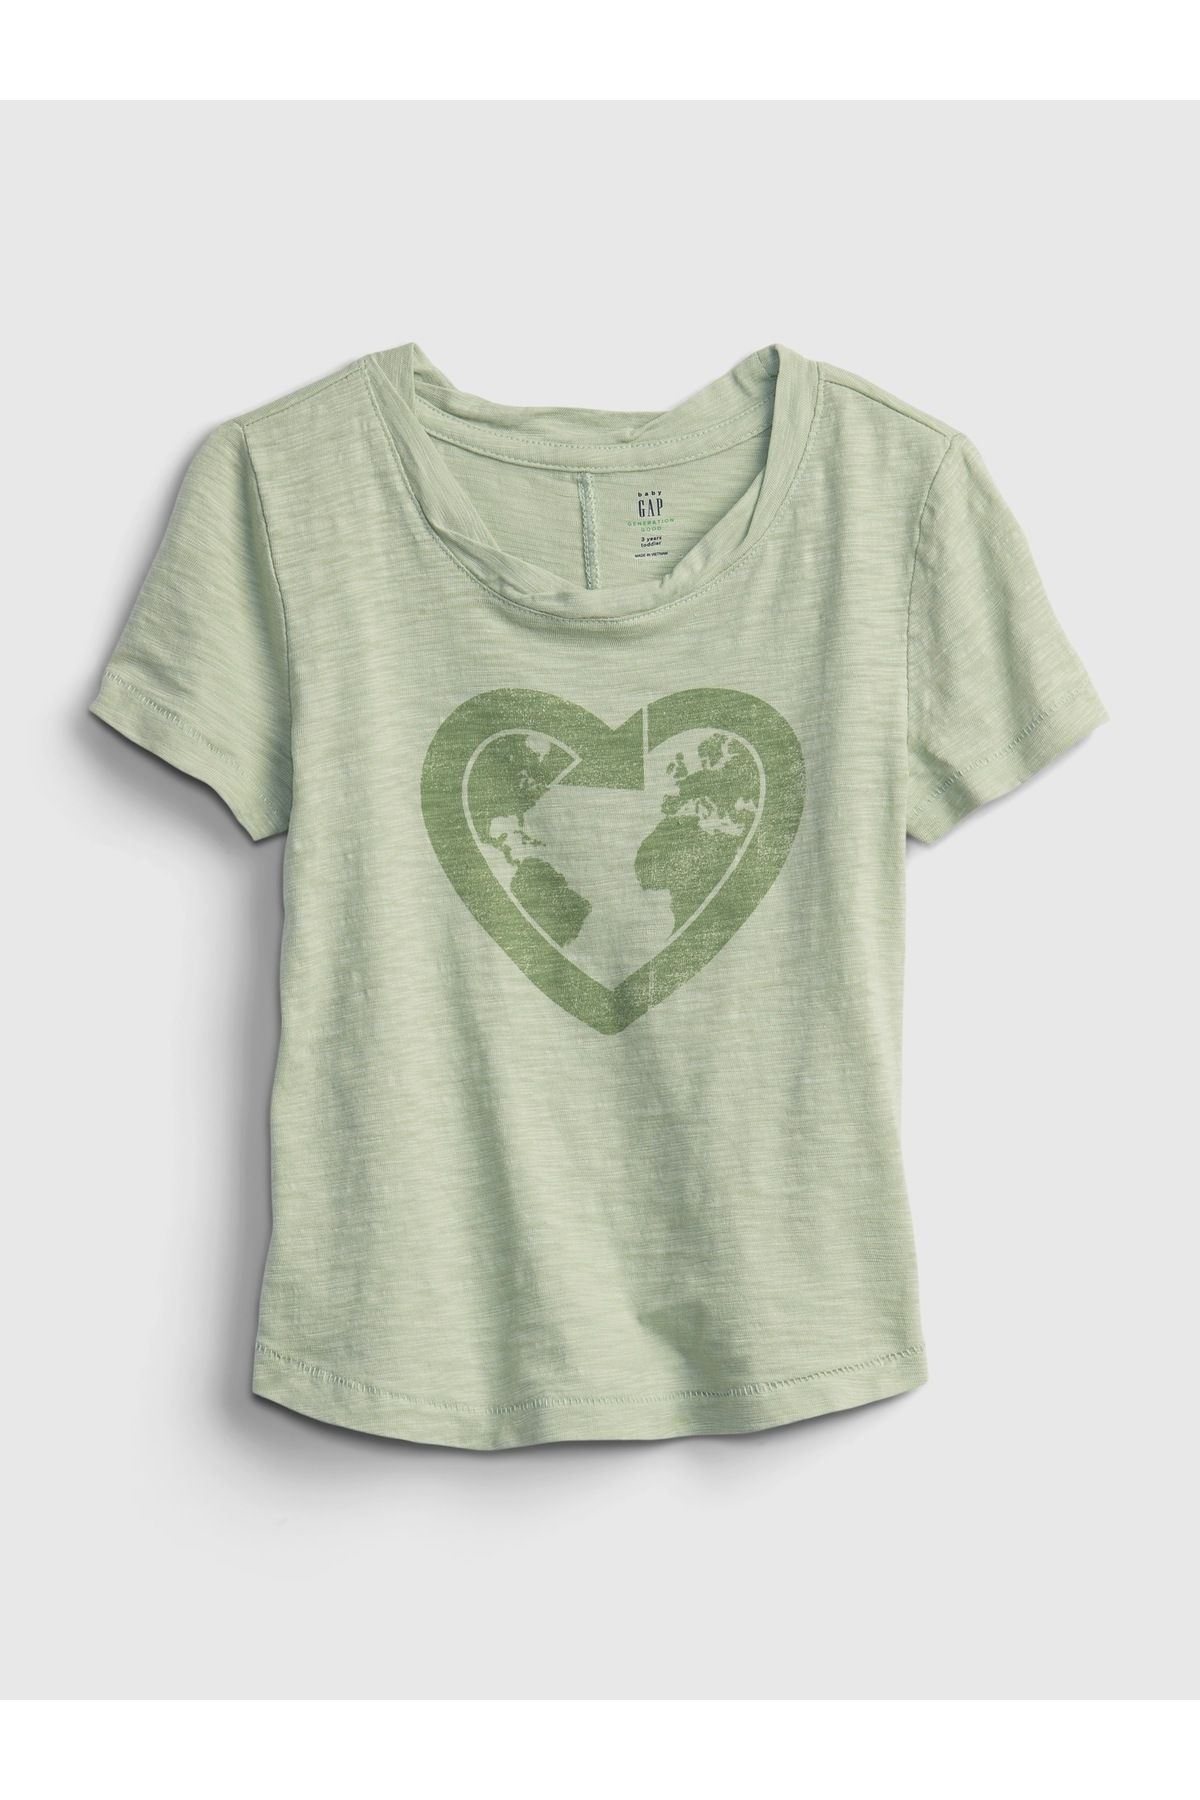 GAP Kız Bebek Yeşil Grafik Desenli T-shirt